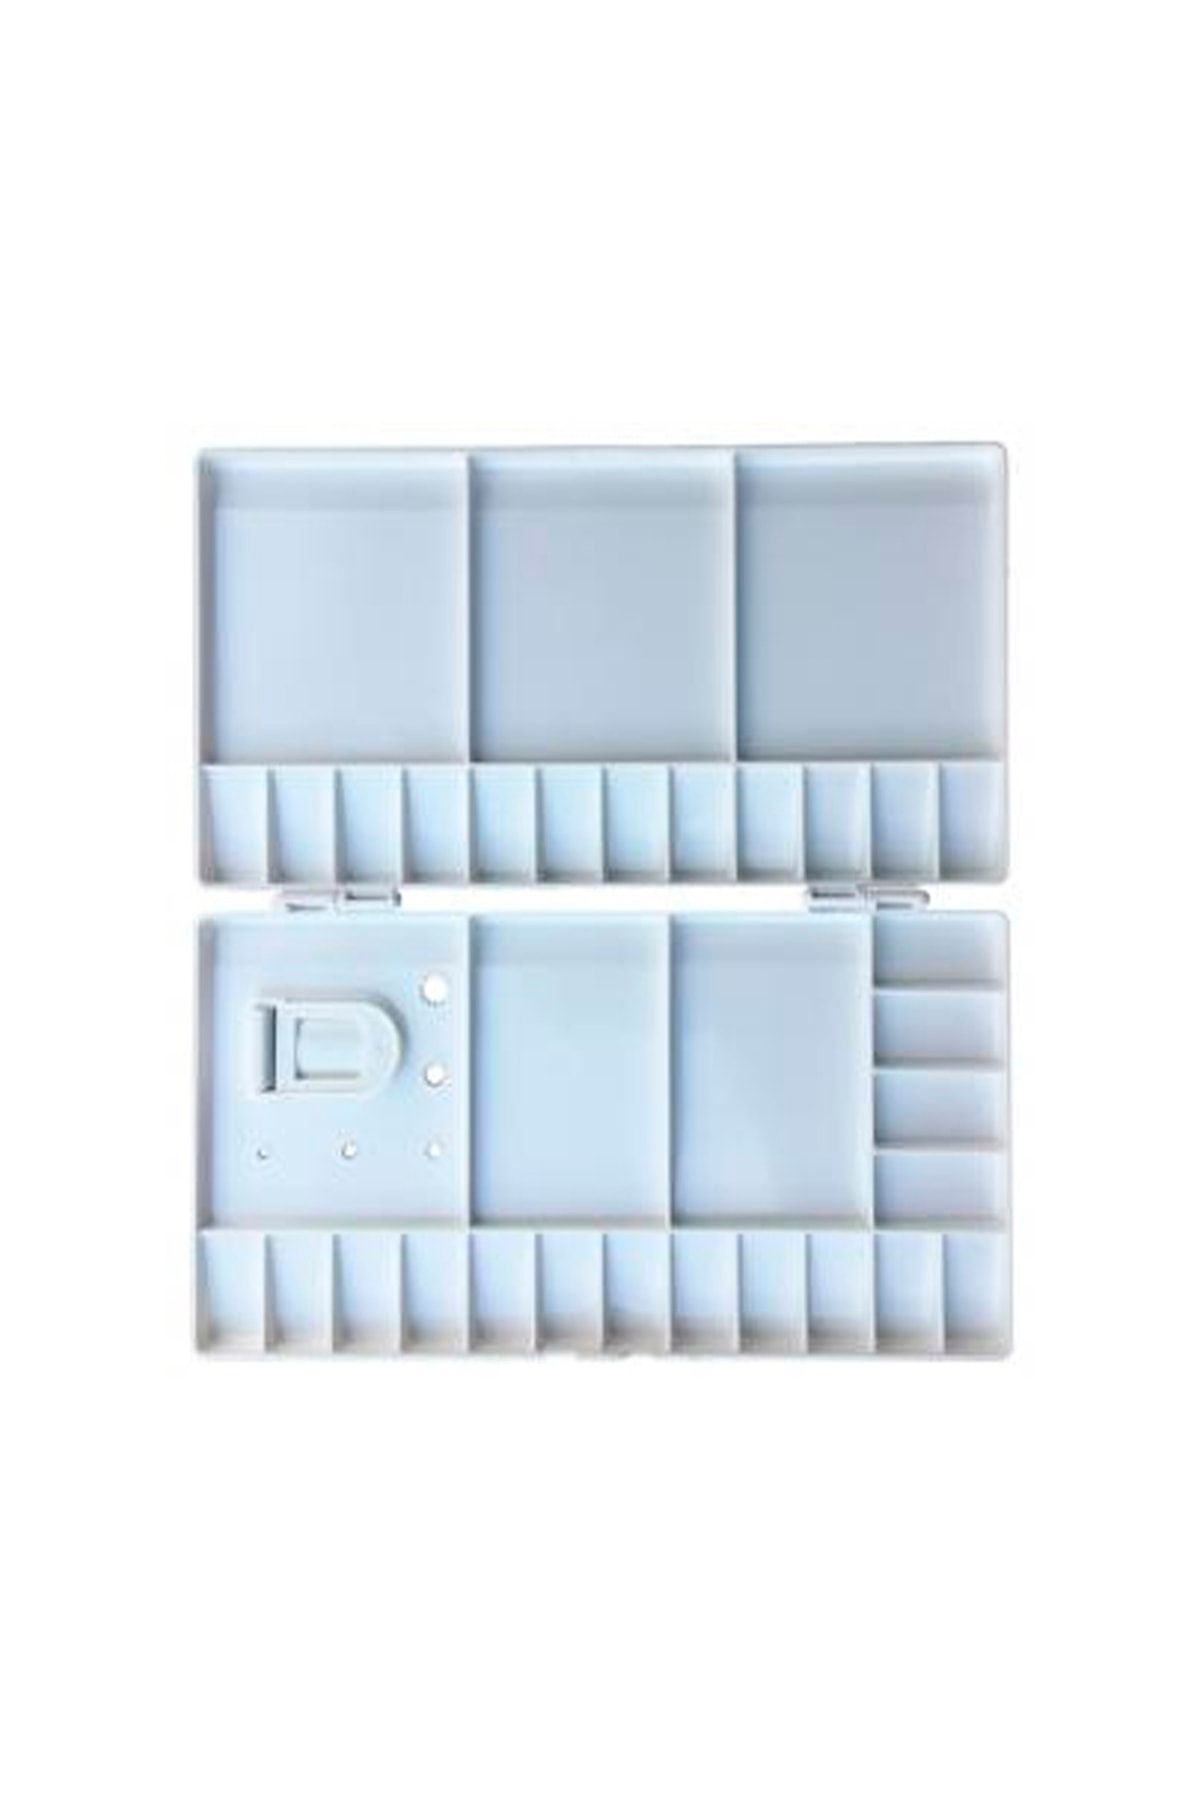 Ponart Kapaklı Plastik Beyaz Özel Palet A159415